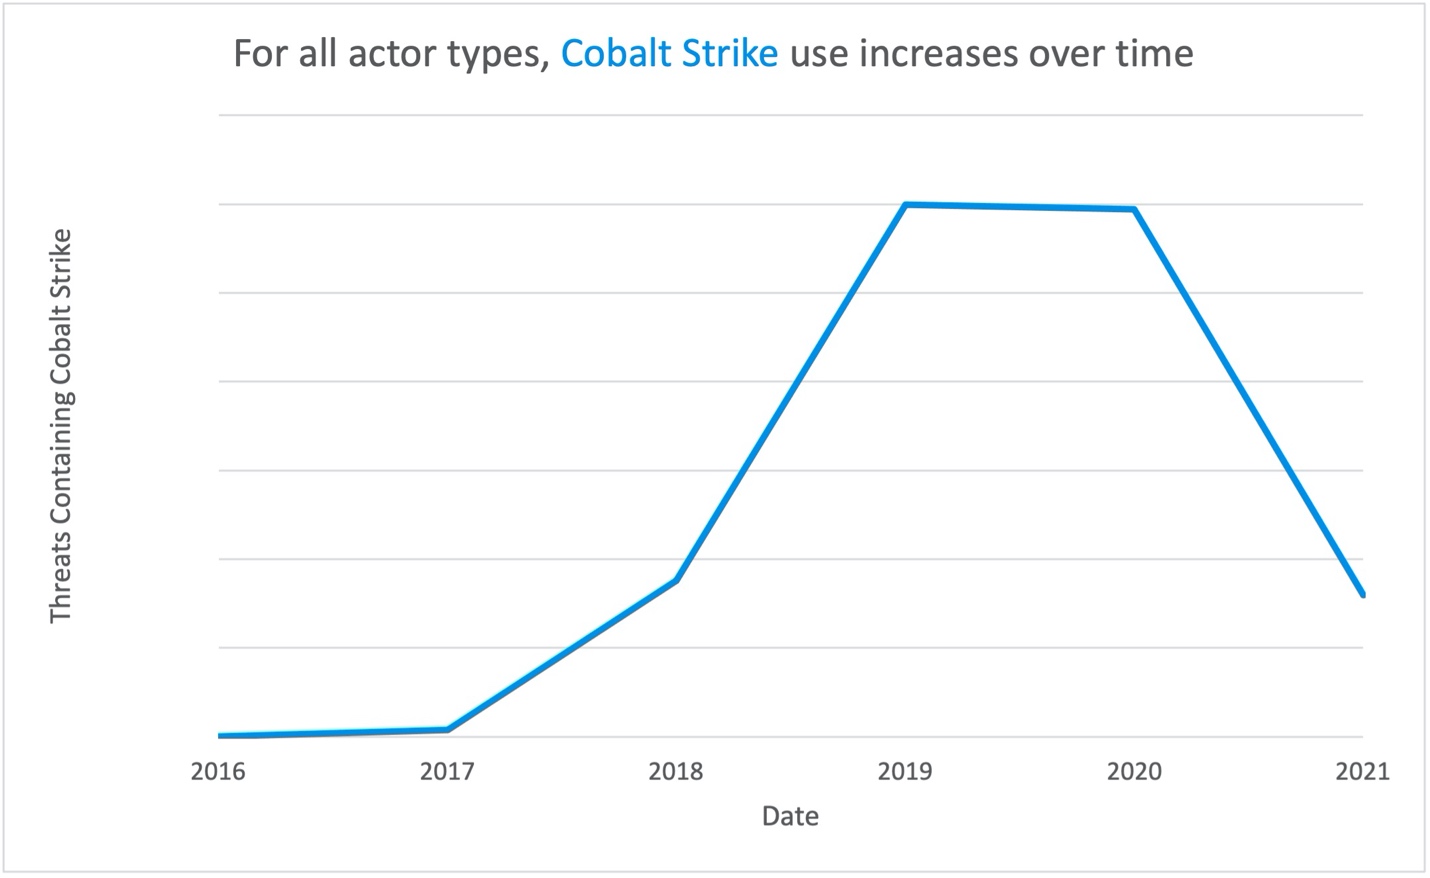 Cobalt-Strike-Bedrohungen sind seit 2016 bis 2021 signifikant gestiegen.